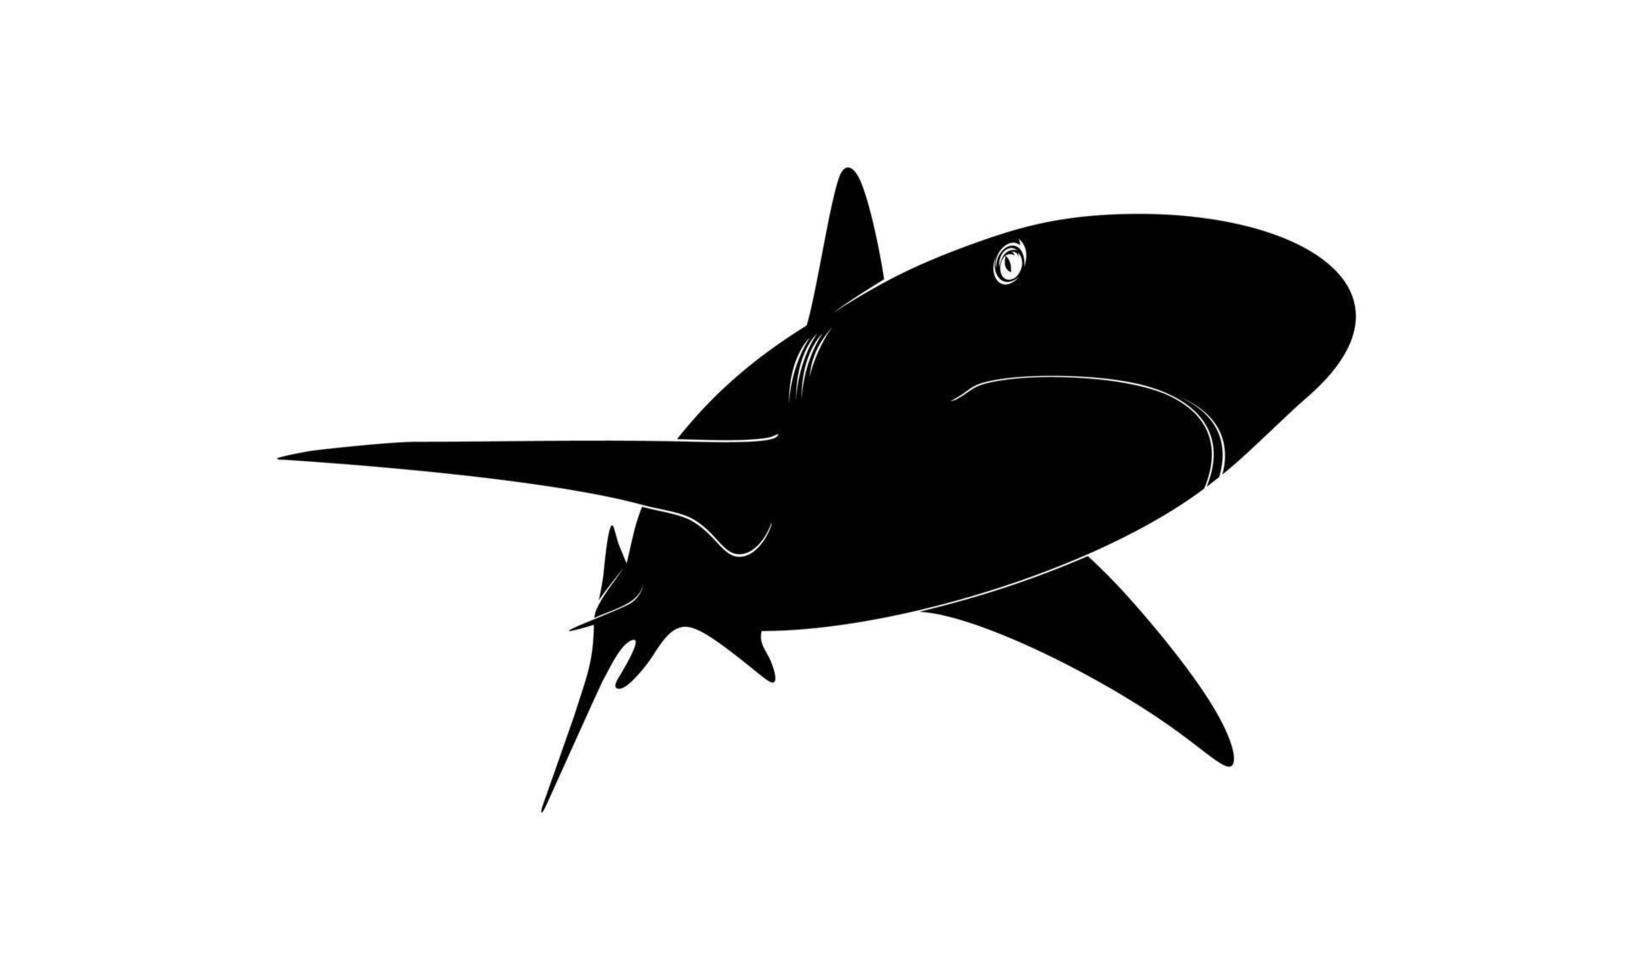 haai silhouet voor logo, pictogram, website, kunst illustratie, infografisch, of grafisch ontwerp element. vector illustratie